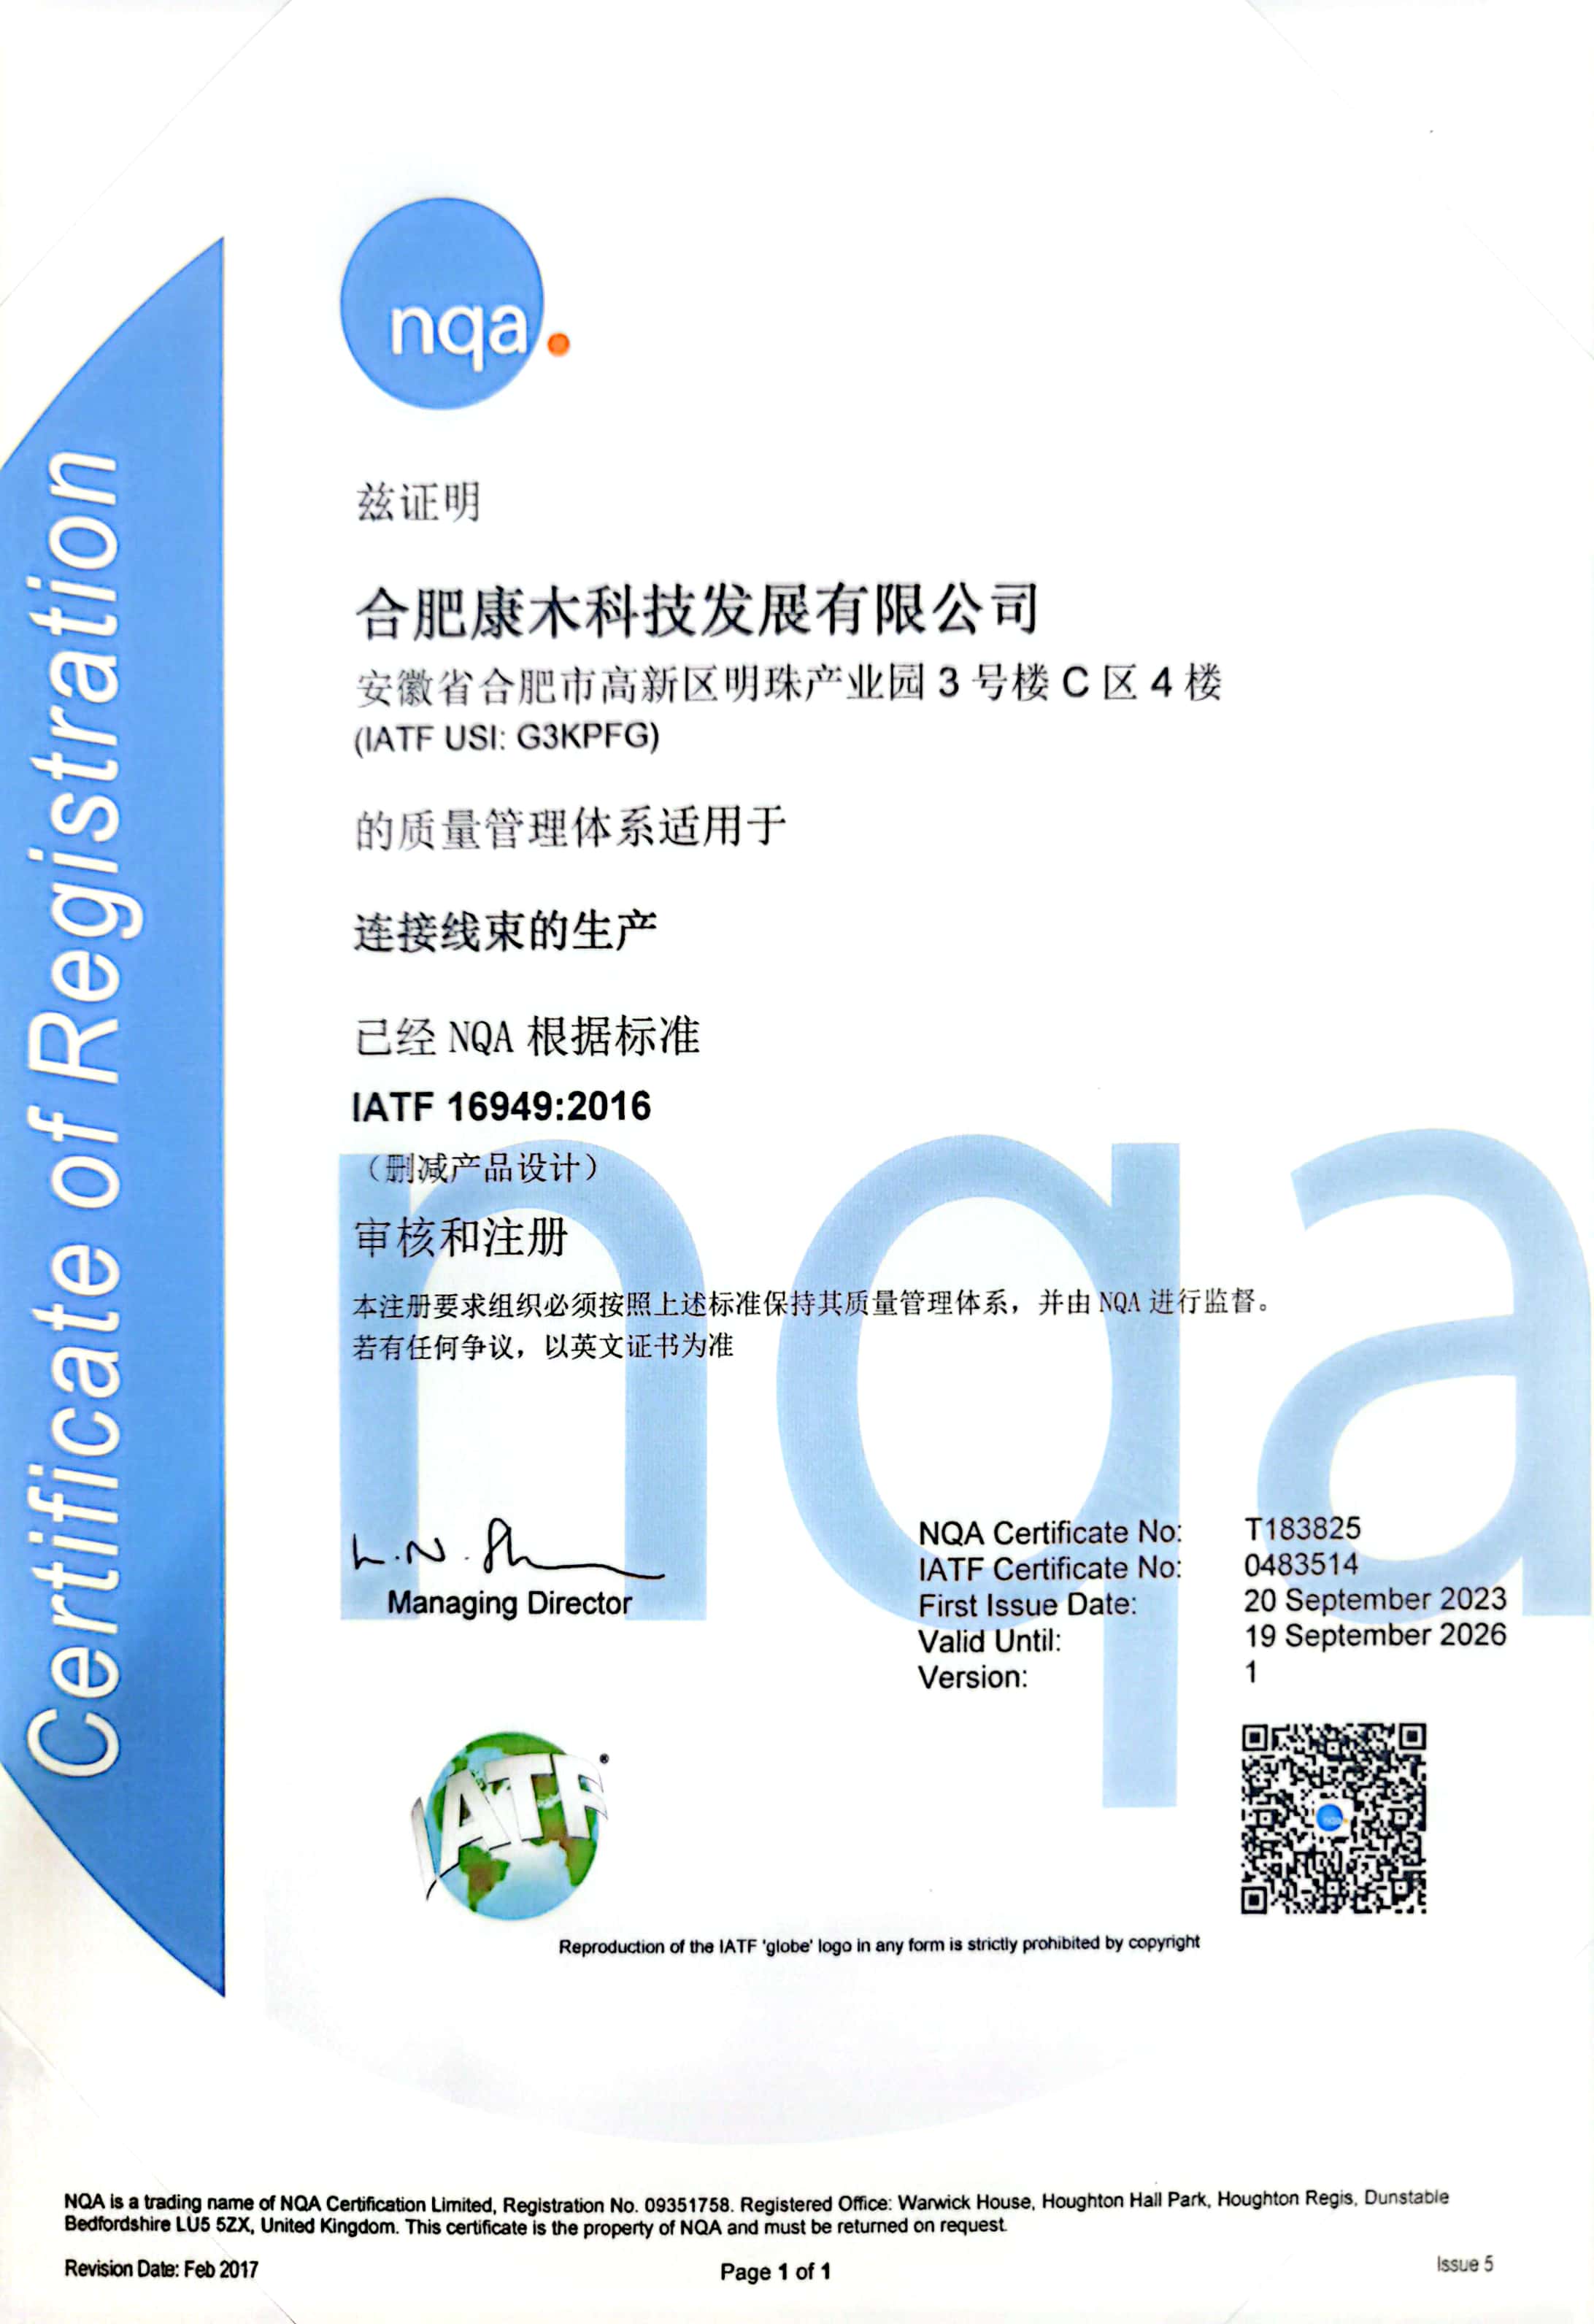 恭喜澳门太阳集团官方网站科技IATF16949体系换证成功